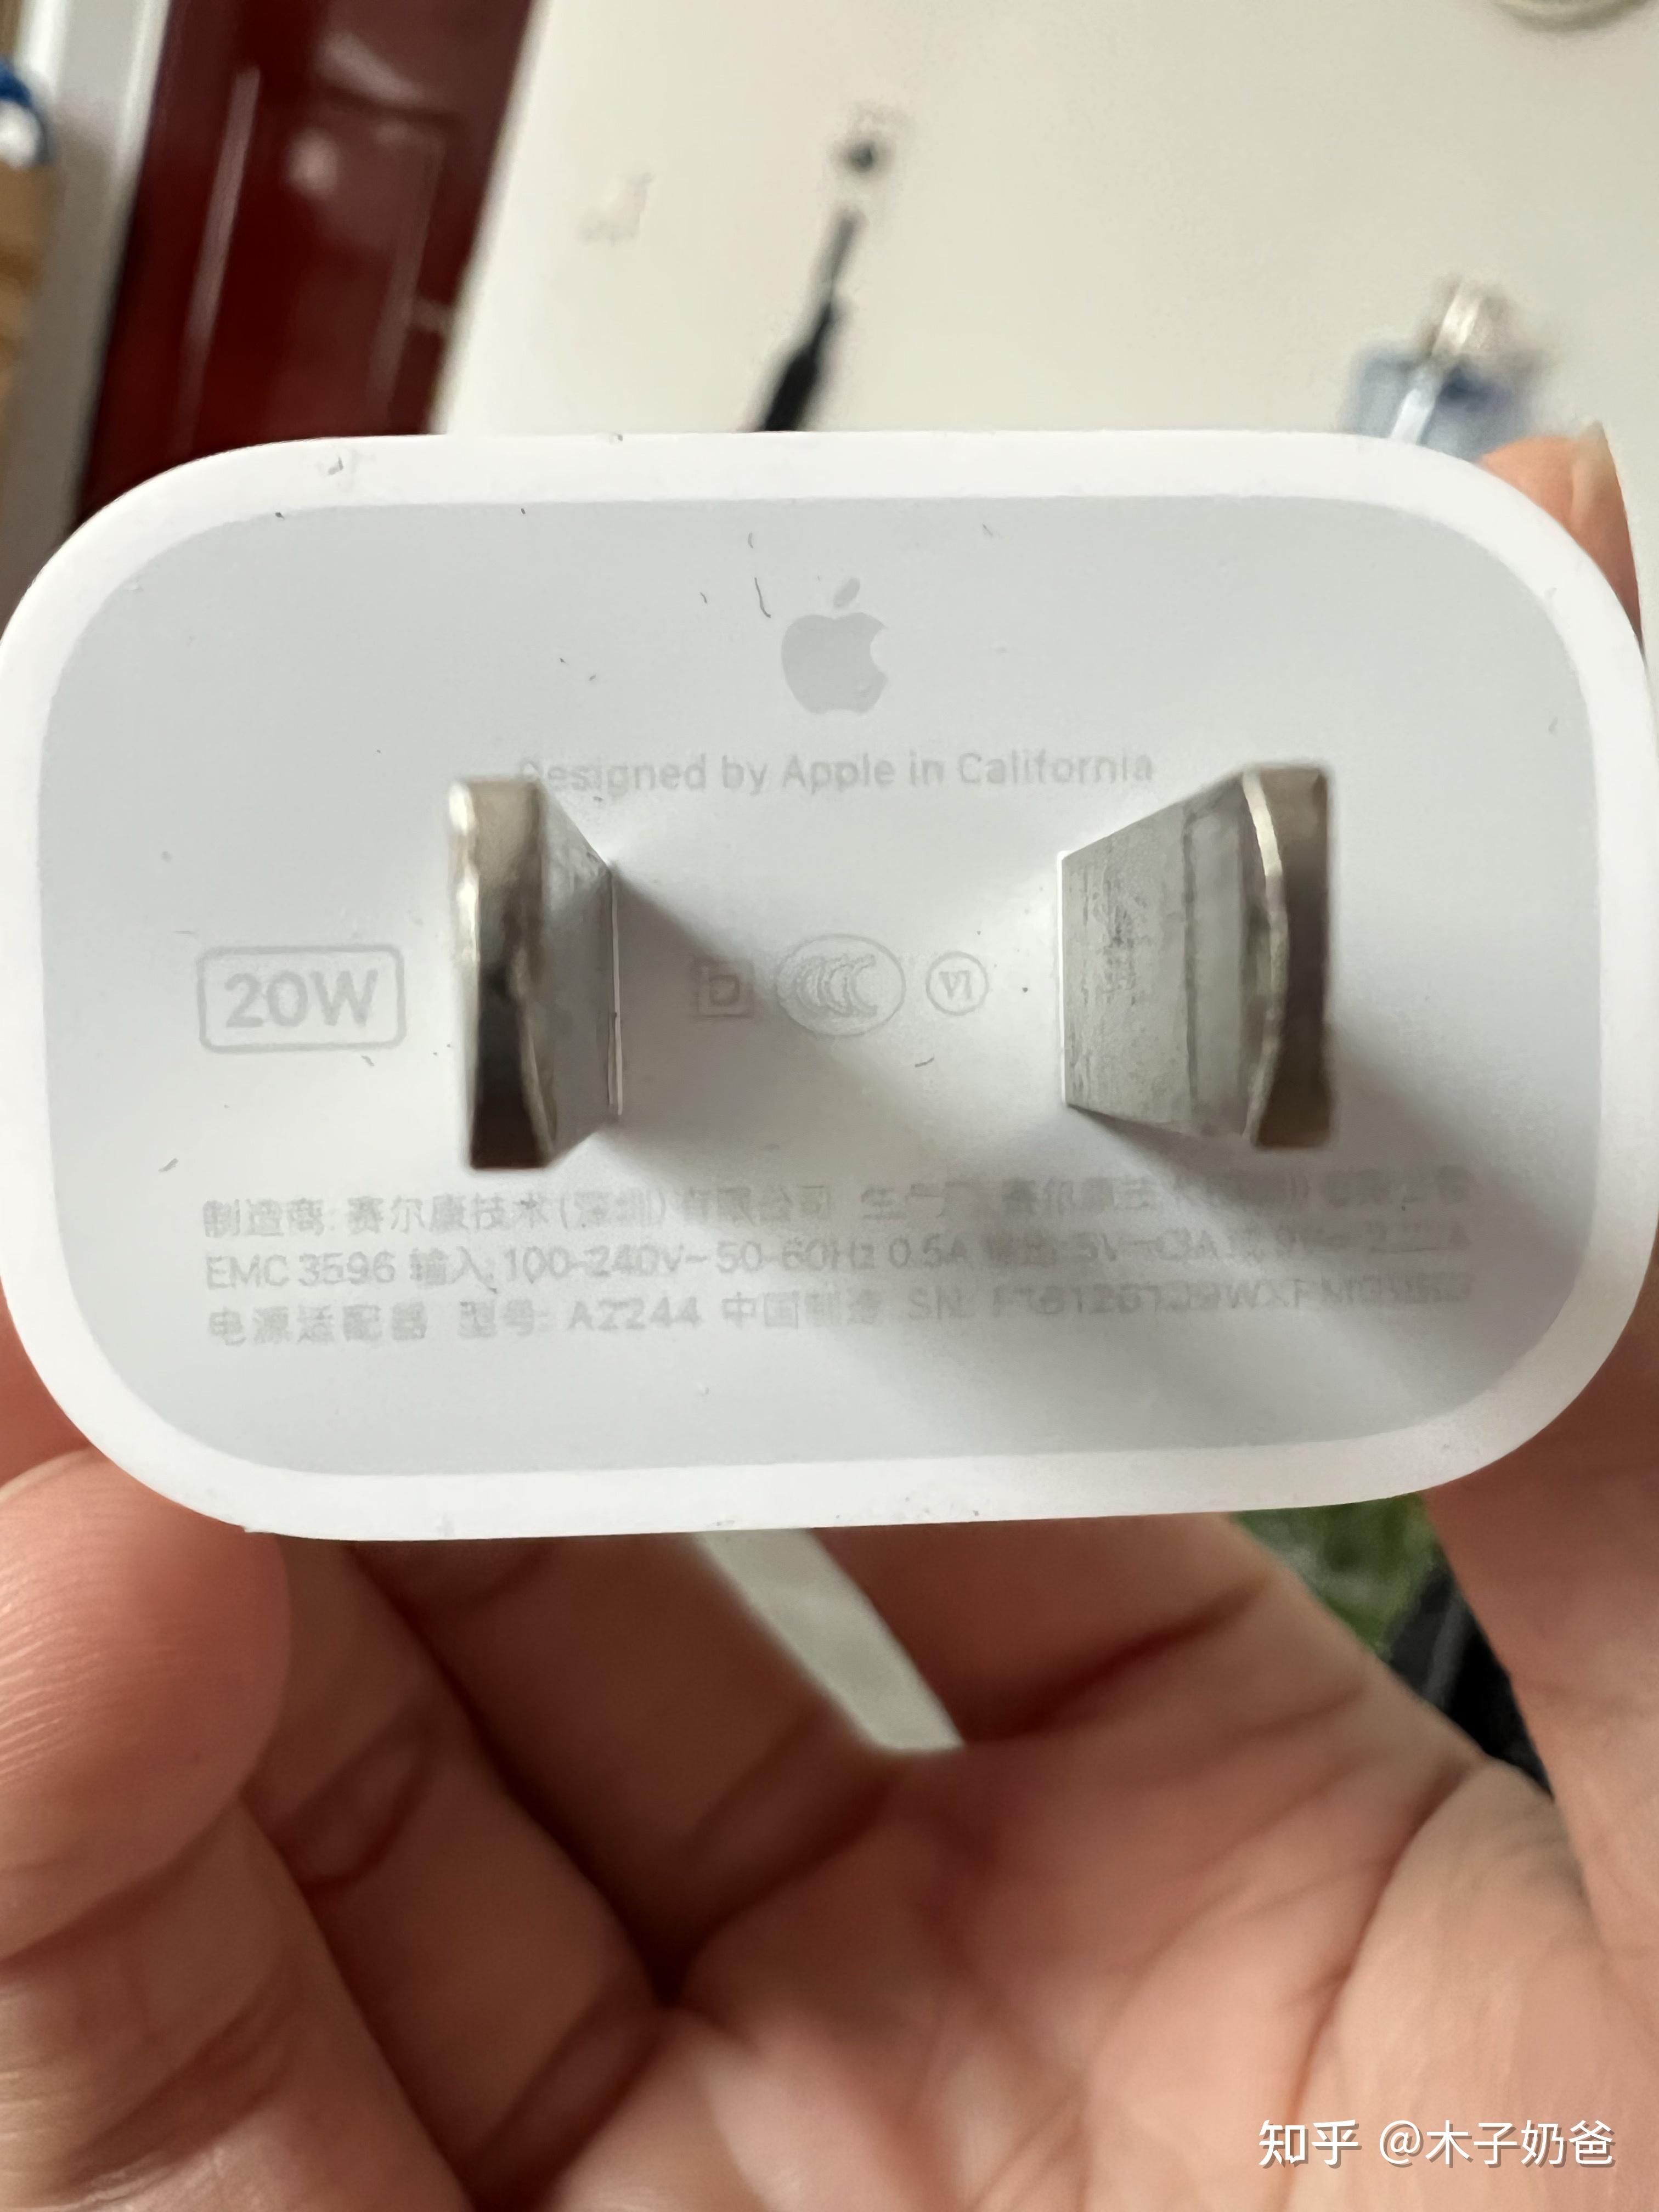 苹果平板的充电器有苹果标志吗